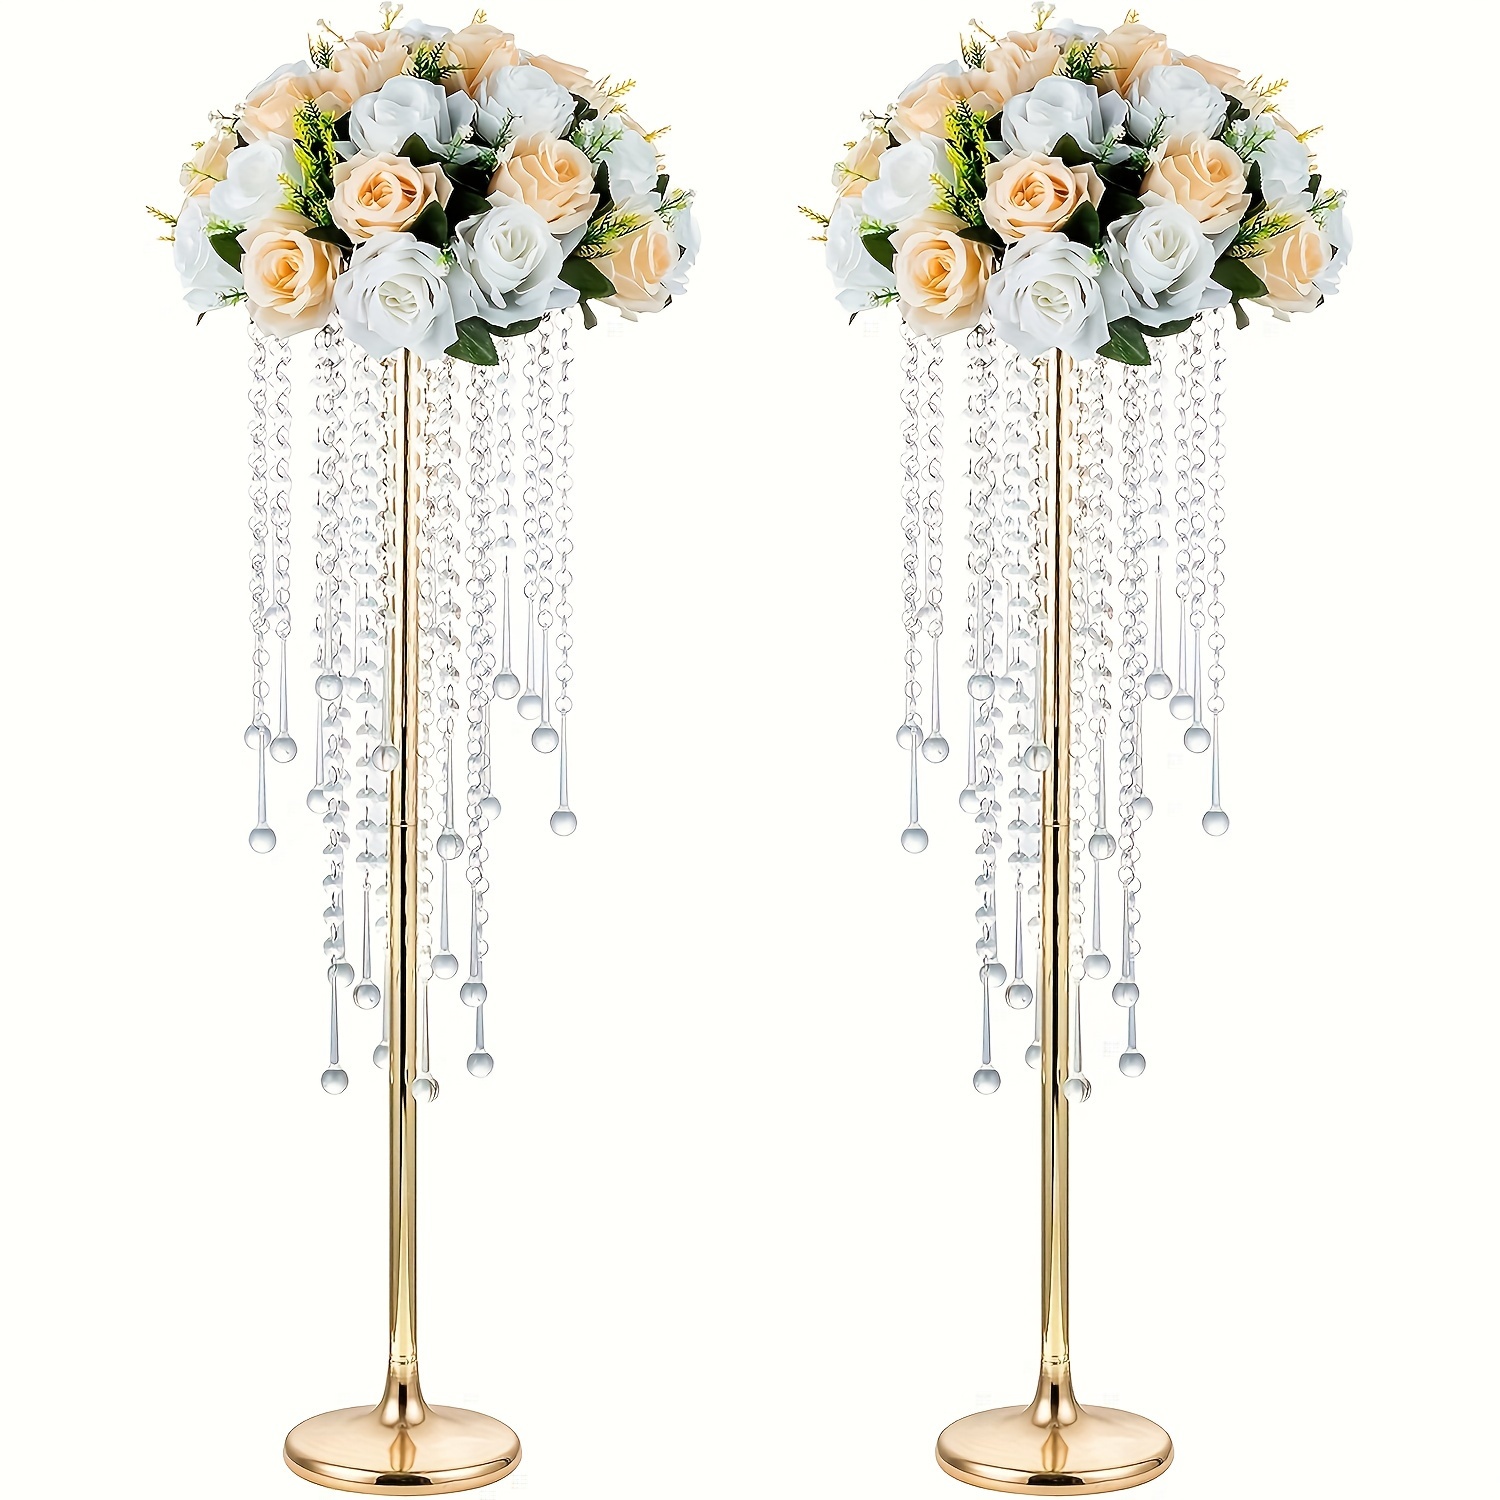 Crystal Prism Strands - For Wedding Trees & Floral Displays 